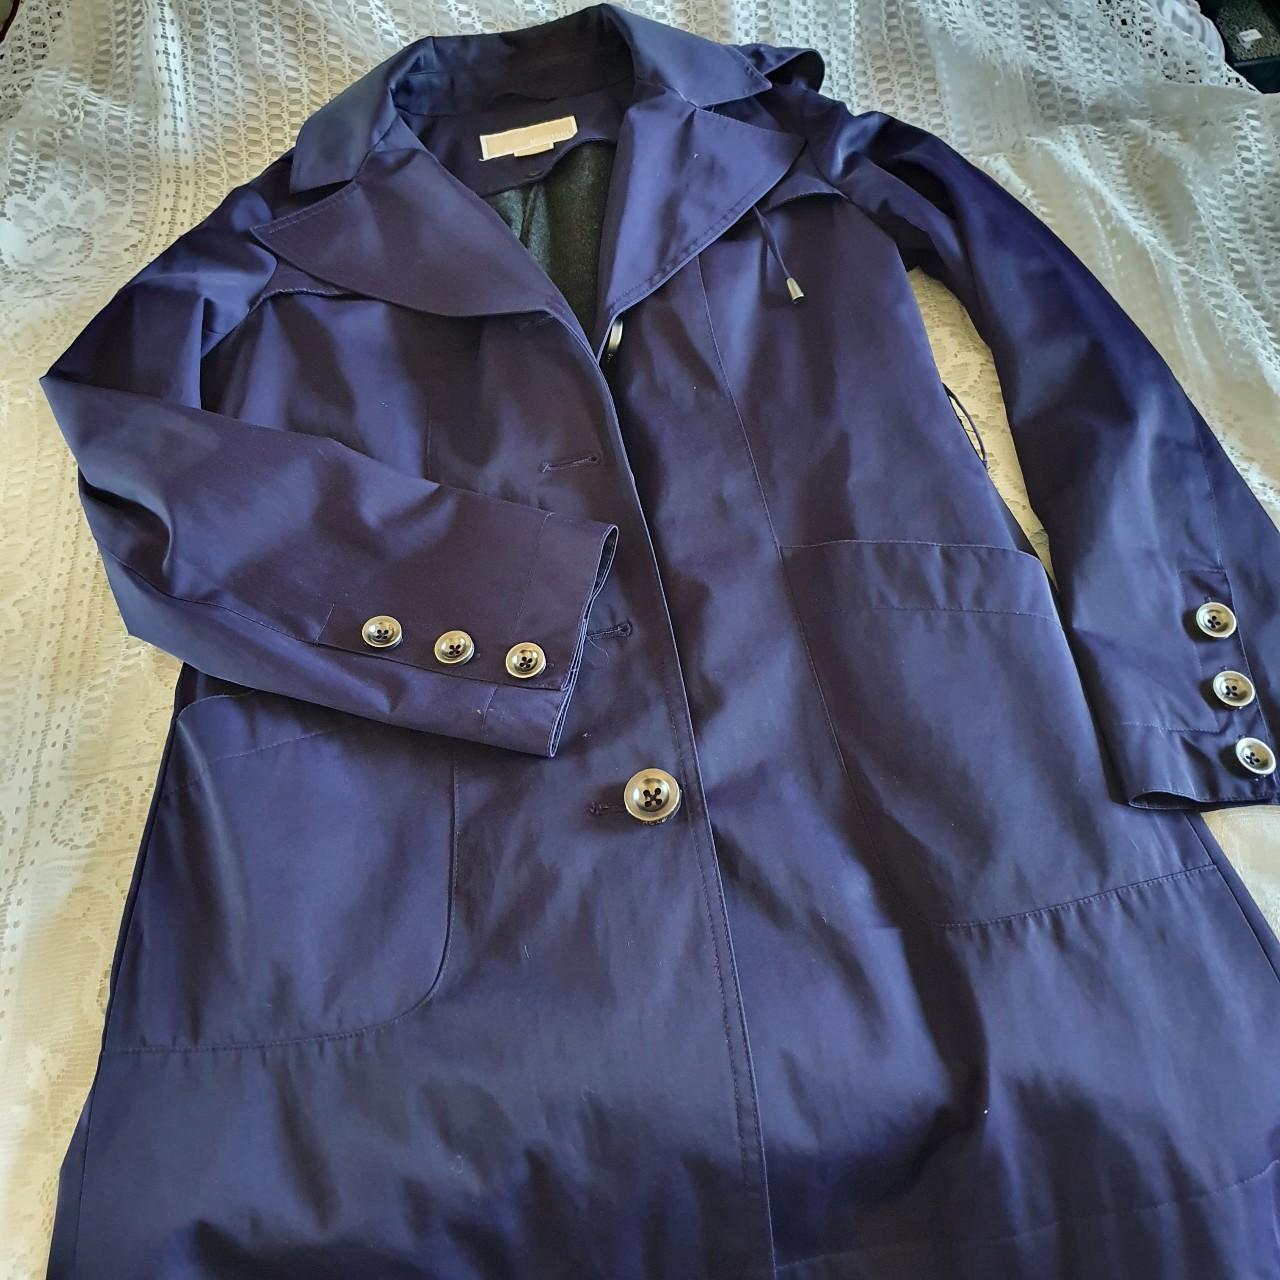 Michael Kors Women's Blue and Navy Coat | Depop